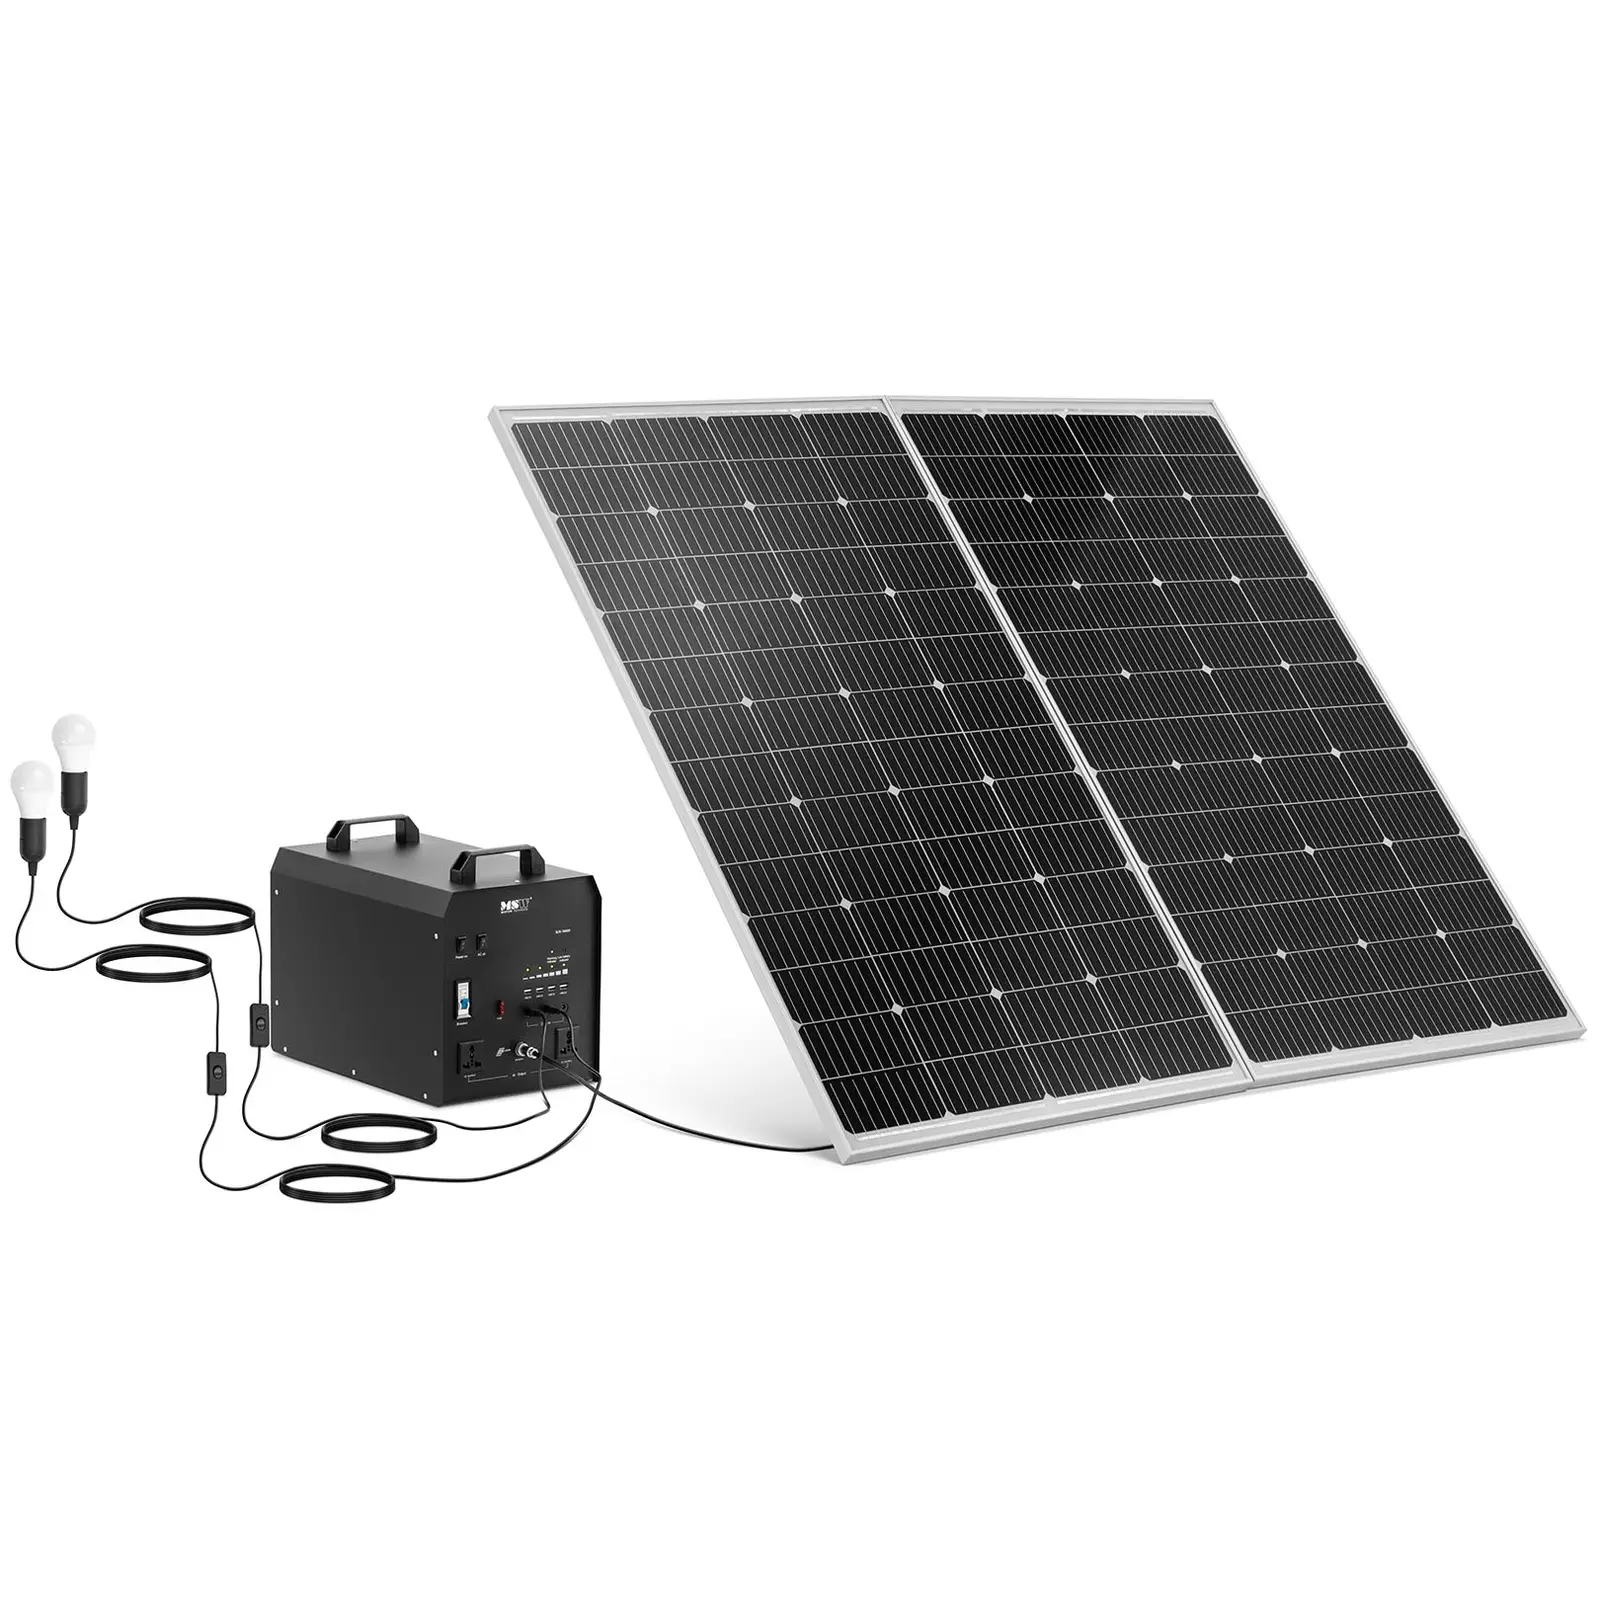 Centrale elettrica portatile con pannello solare e inverter -  W - 5 / 12 /230 V - 2 luci LED